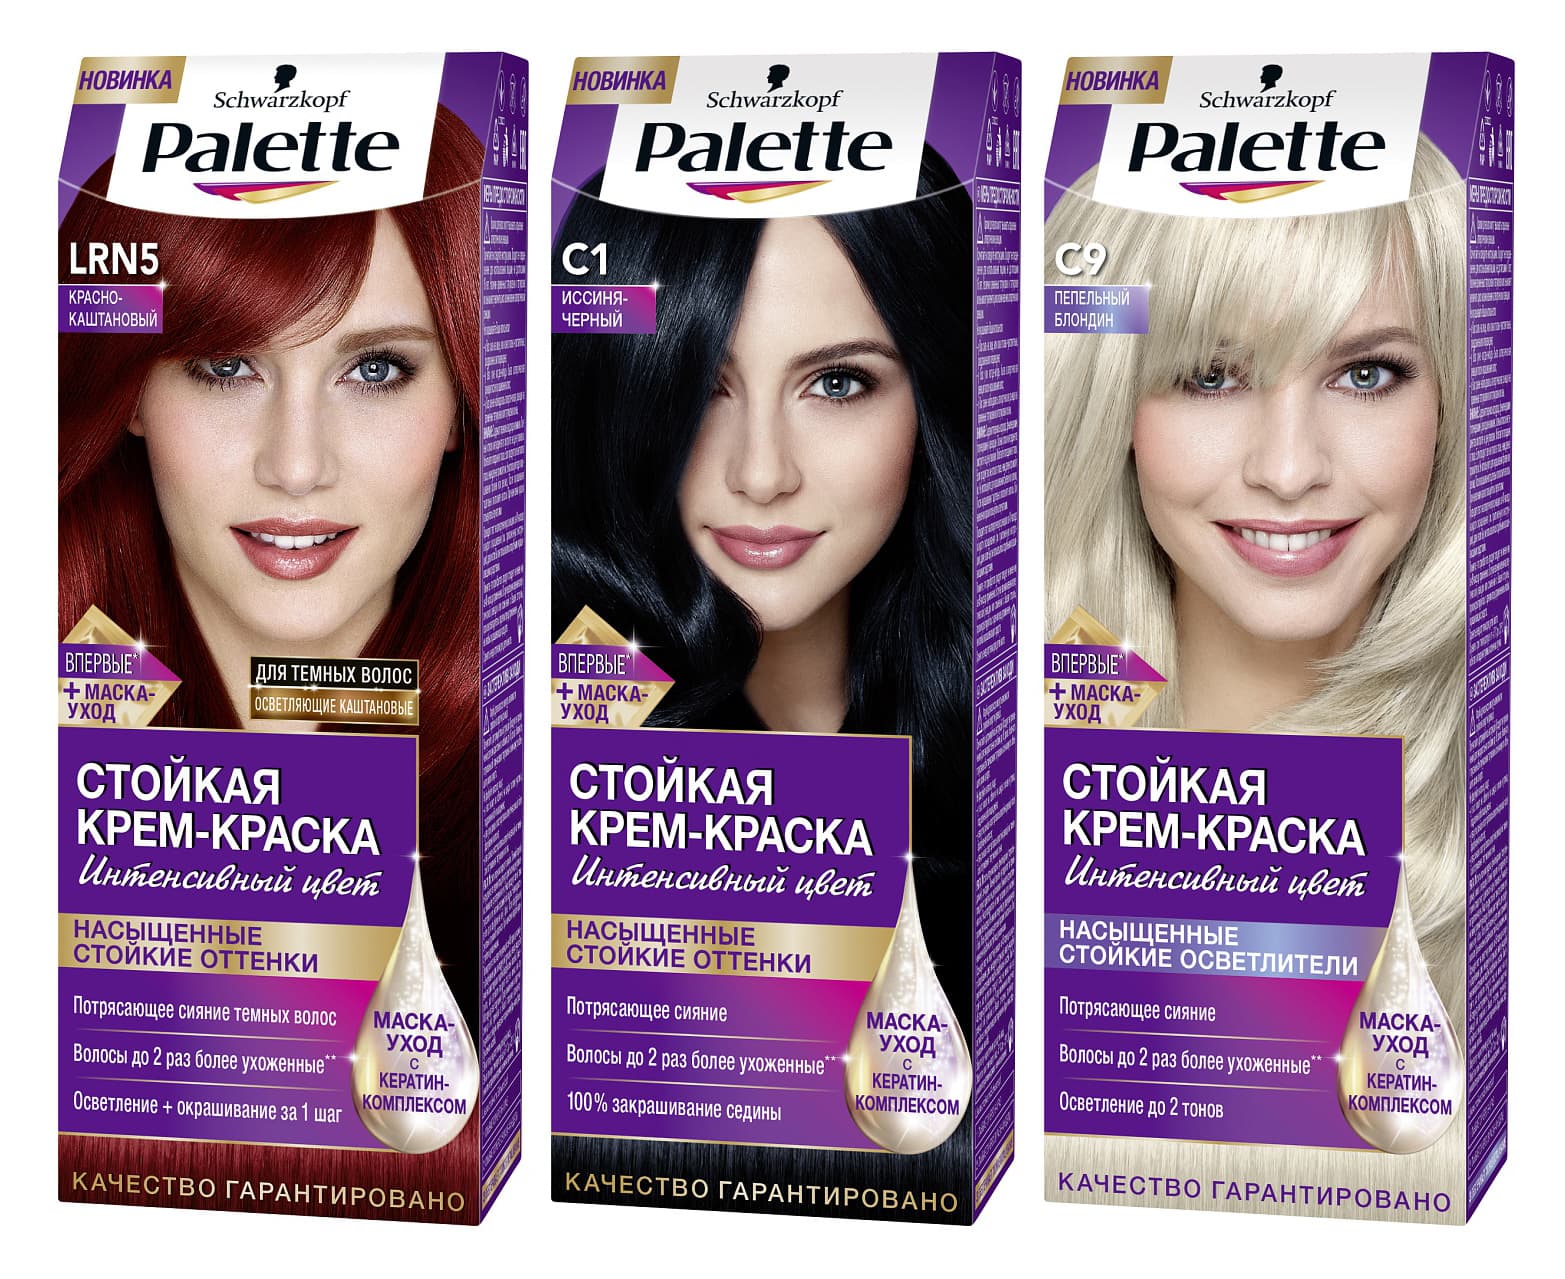 Купить краску для волос в новосибирске